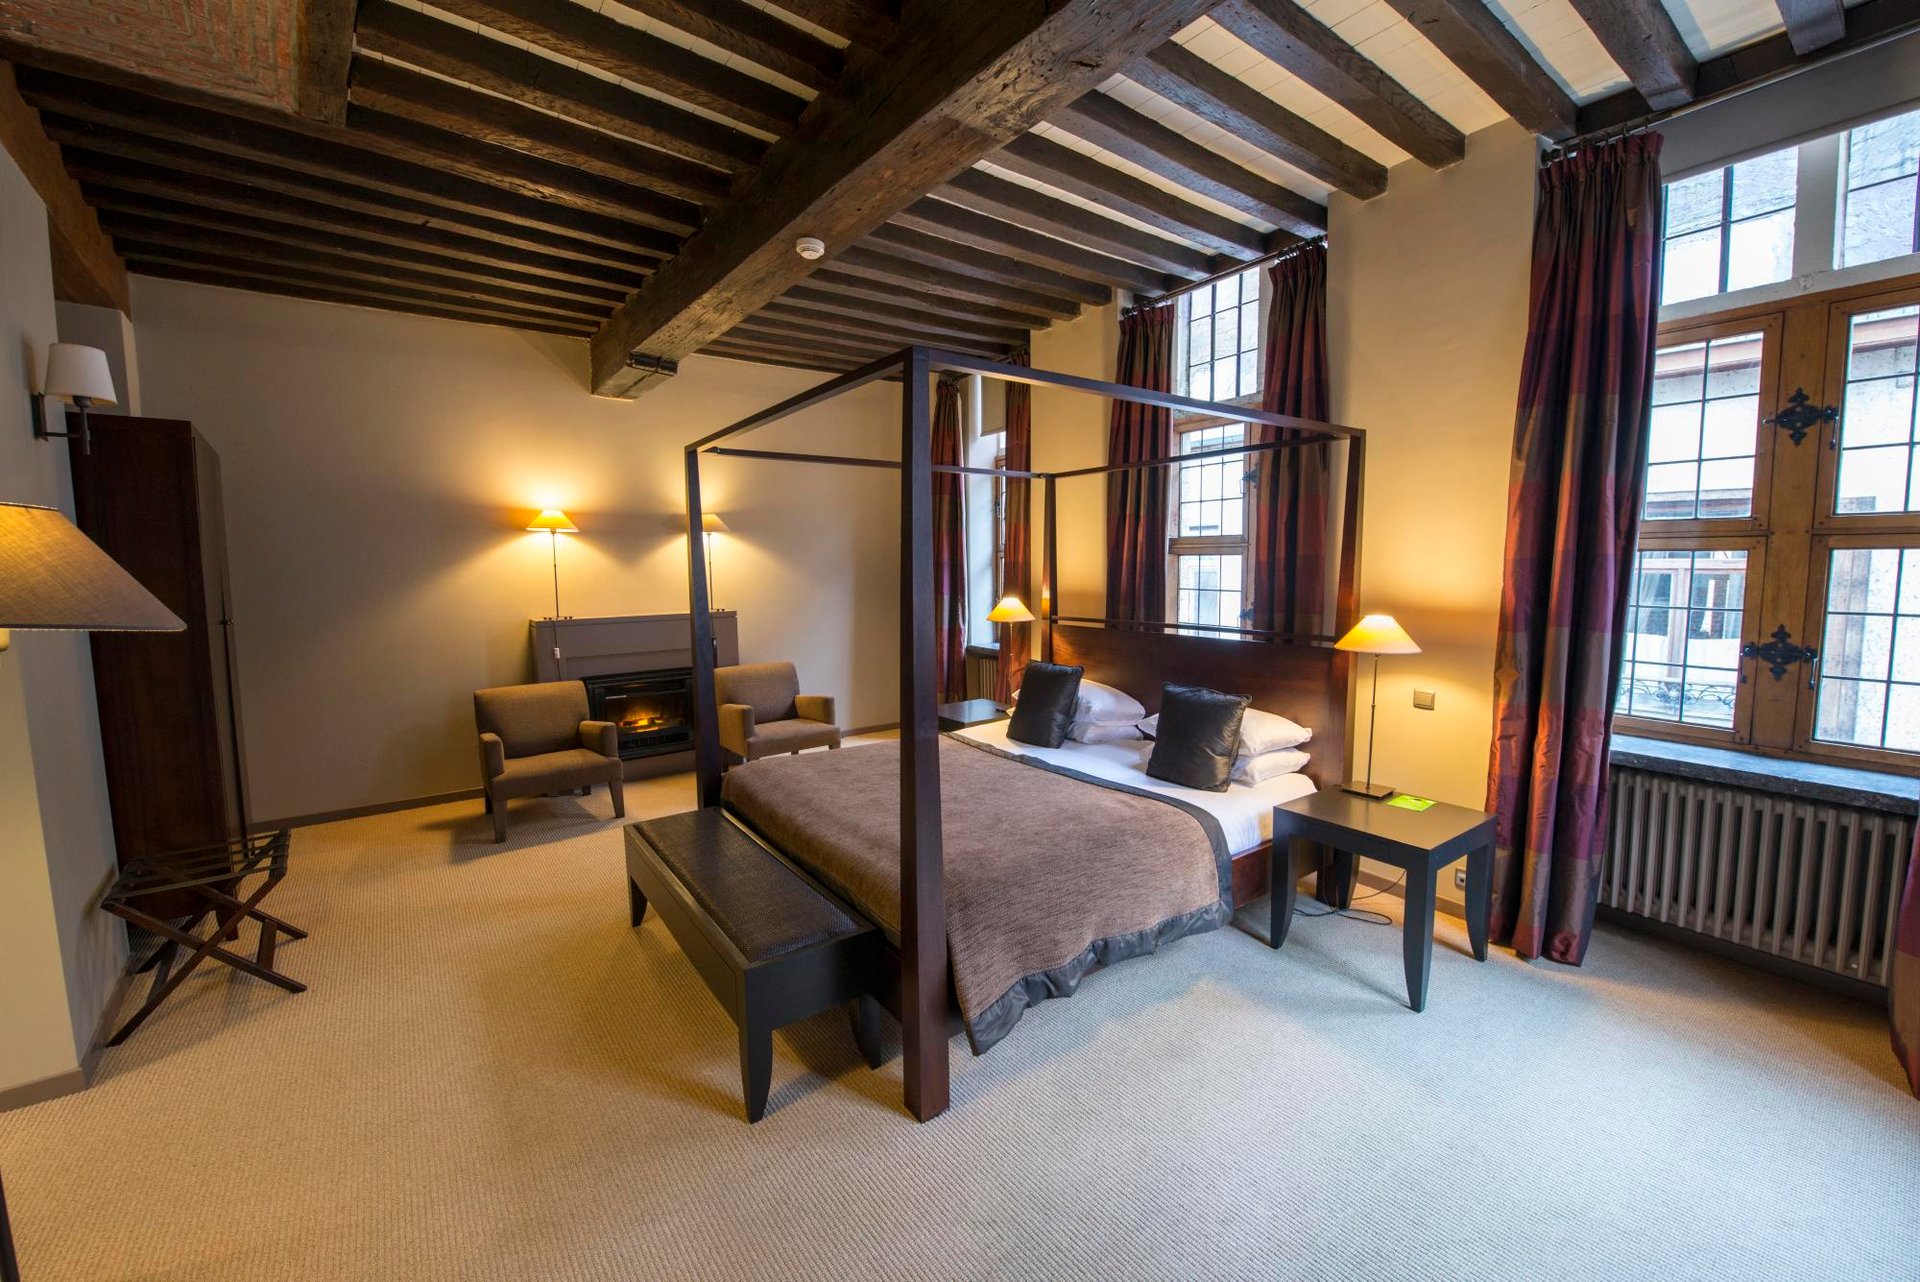 Chambre Exceptional, chambre confort, hôtel historique, chambre avec salon, chambre avec bureau, chambre contemporaine